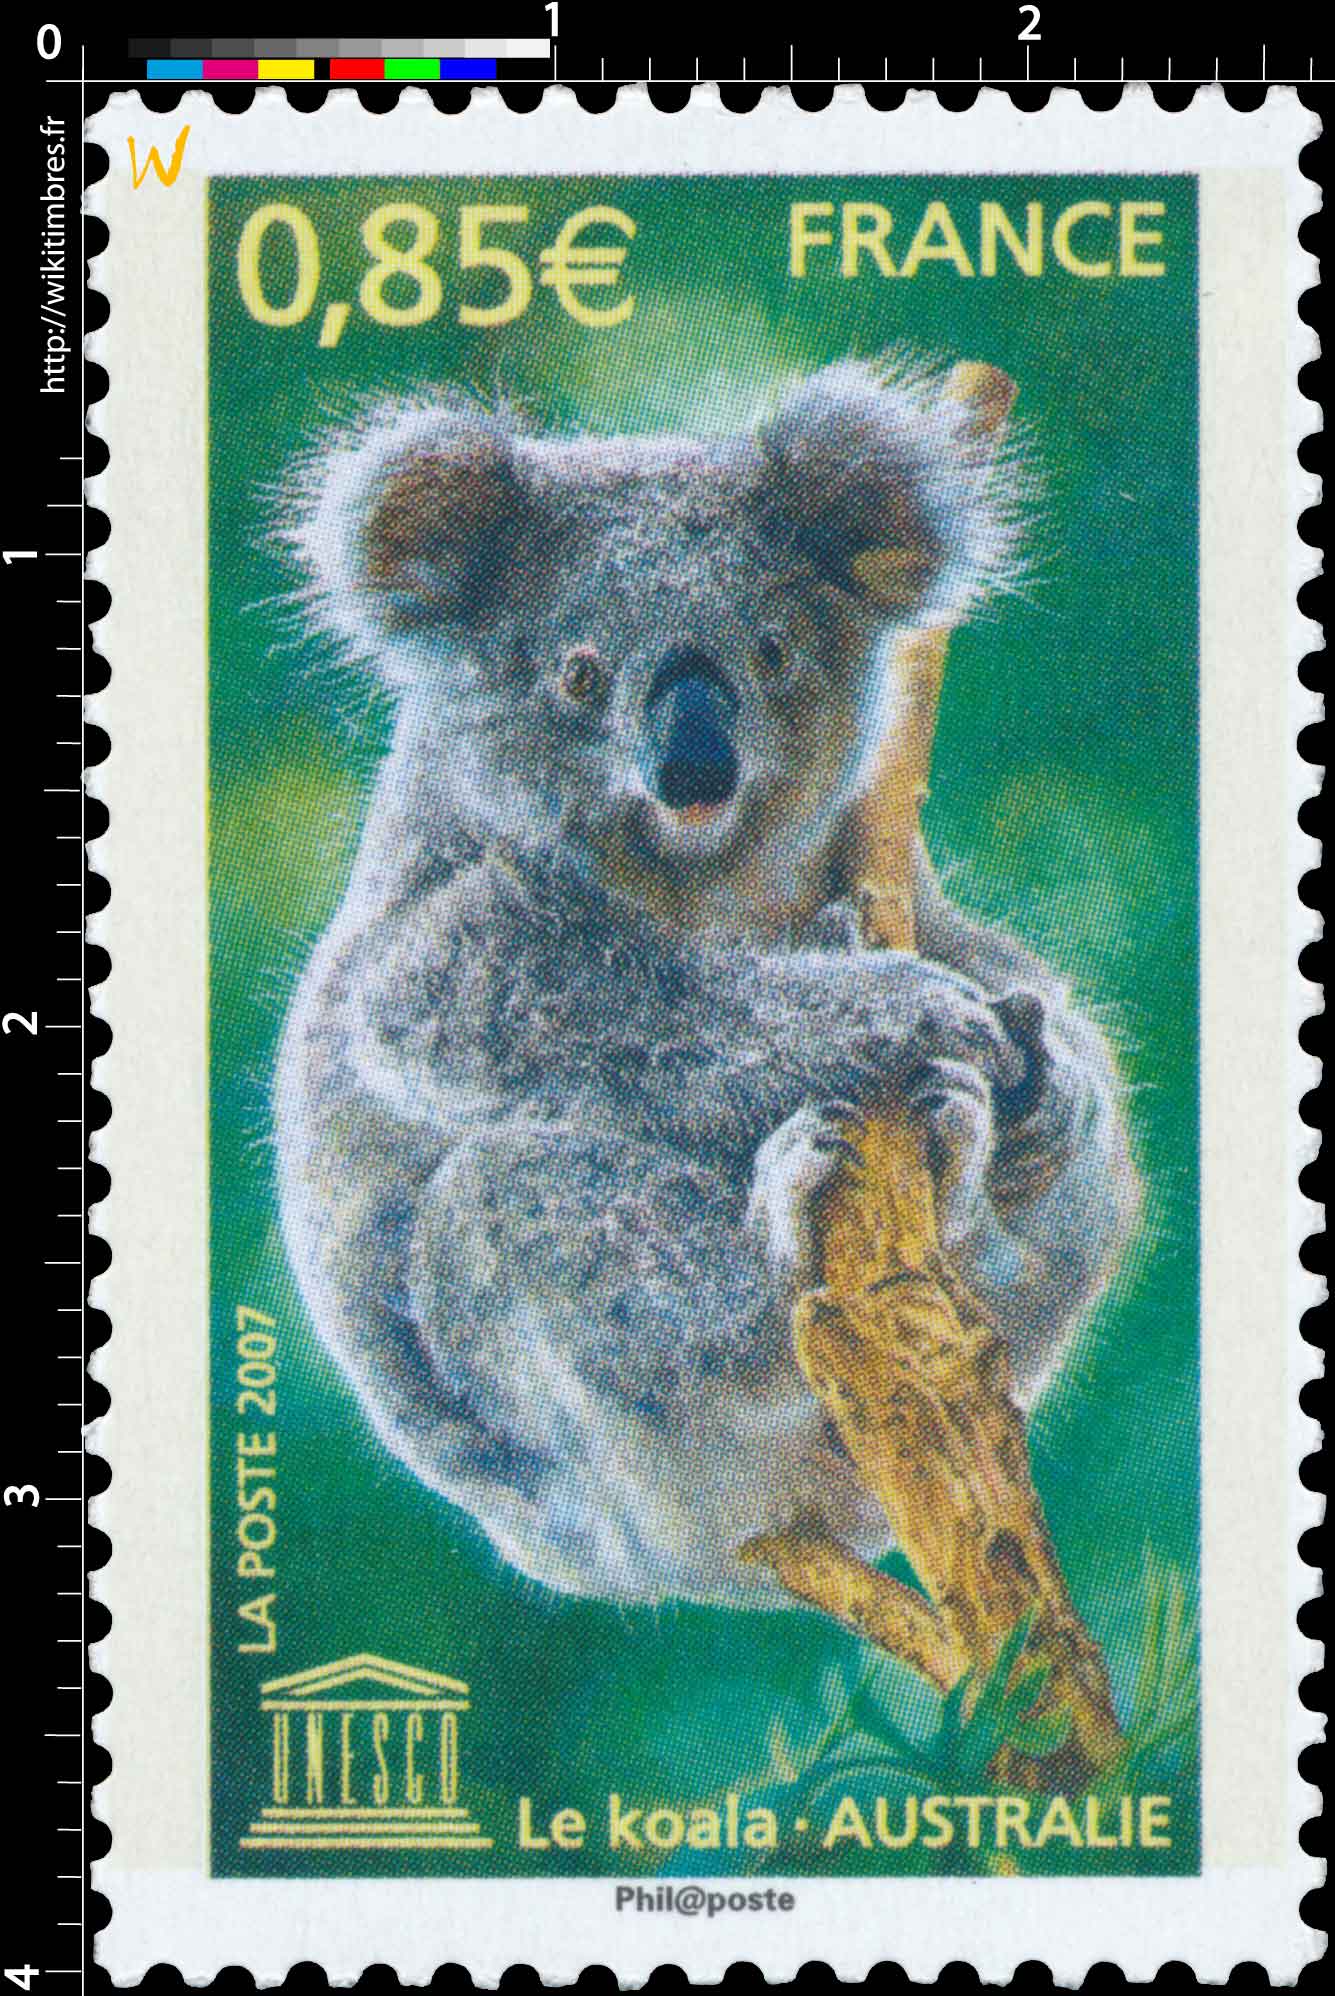 2007 UNESCO Le Koala - AUSTRALIE